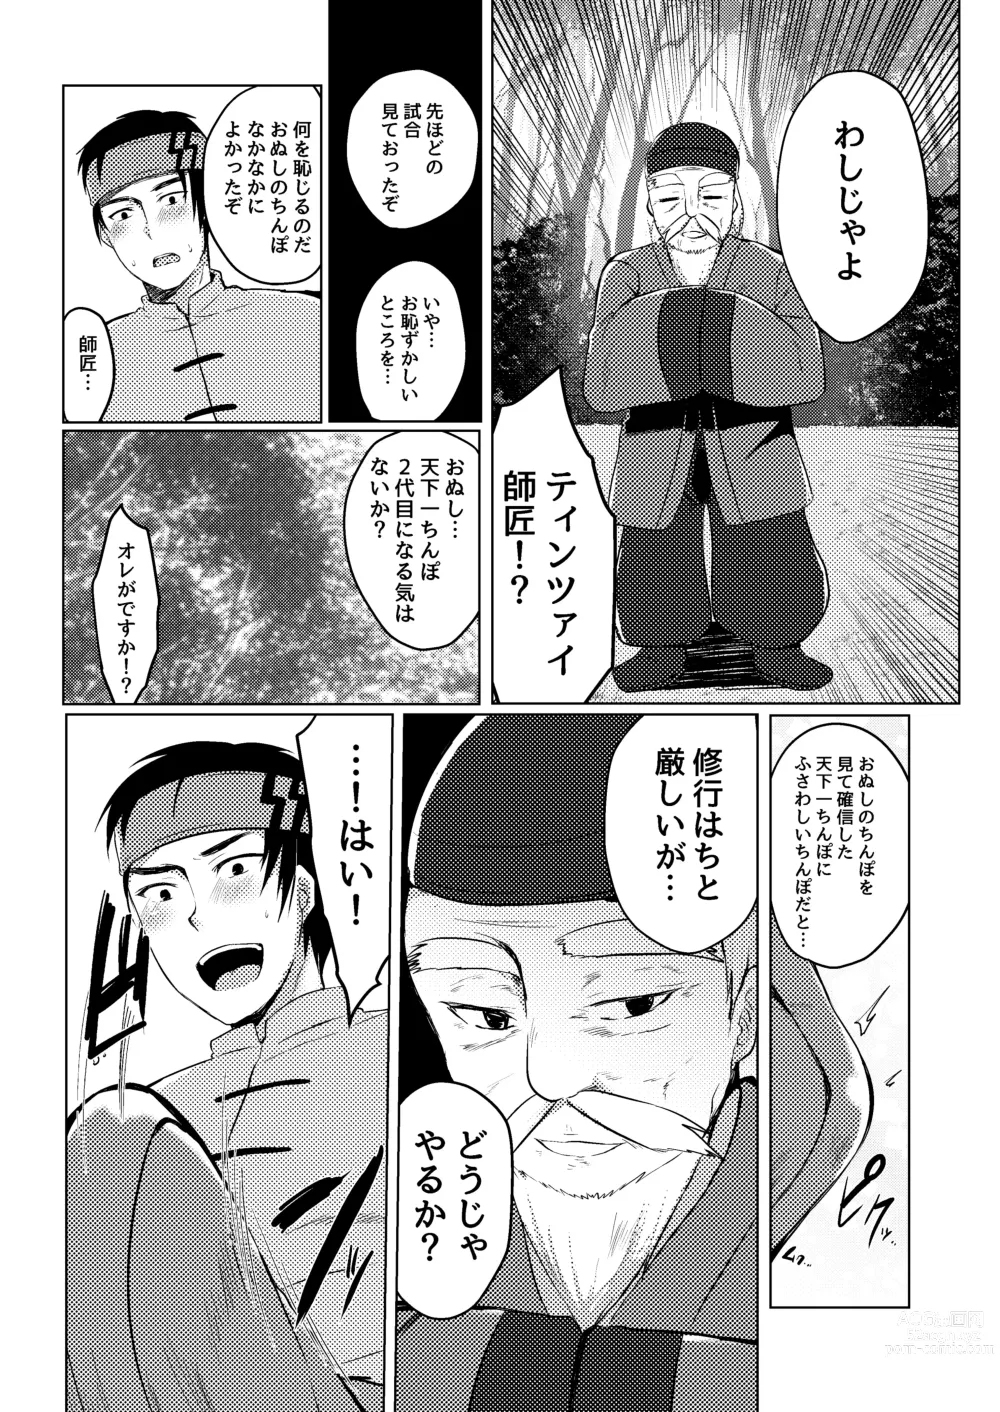 Page 11 of doujinshi Tenkaichi Chinpo budokai